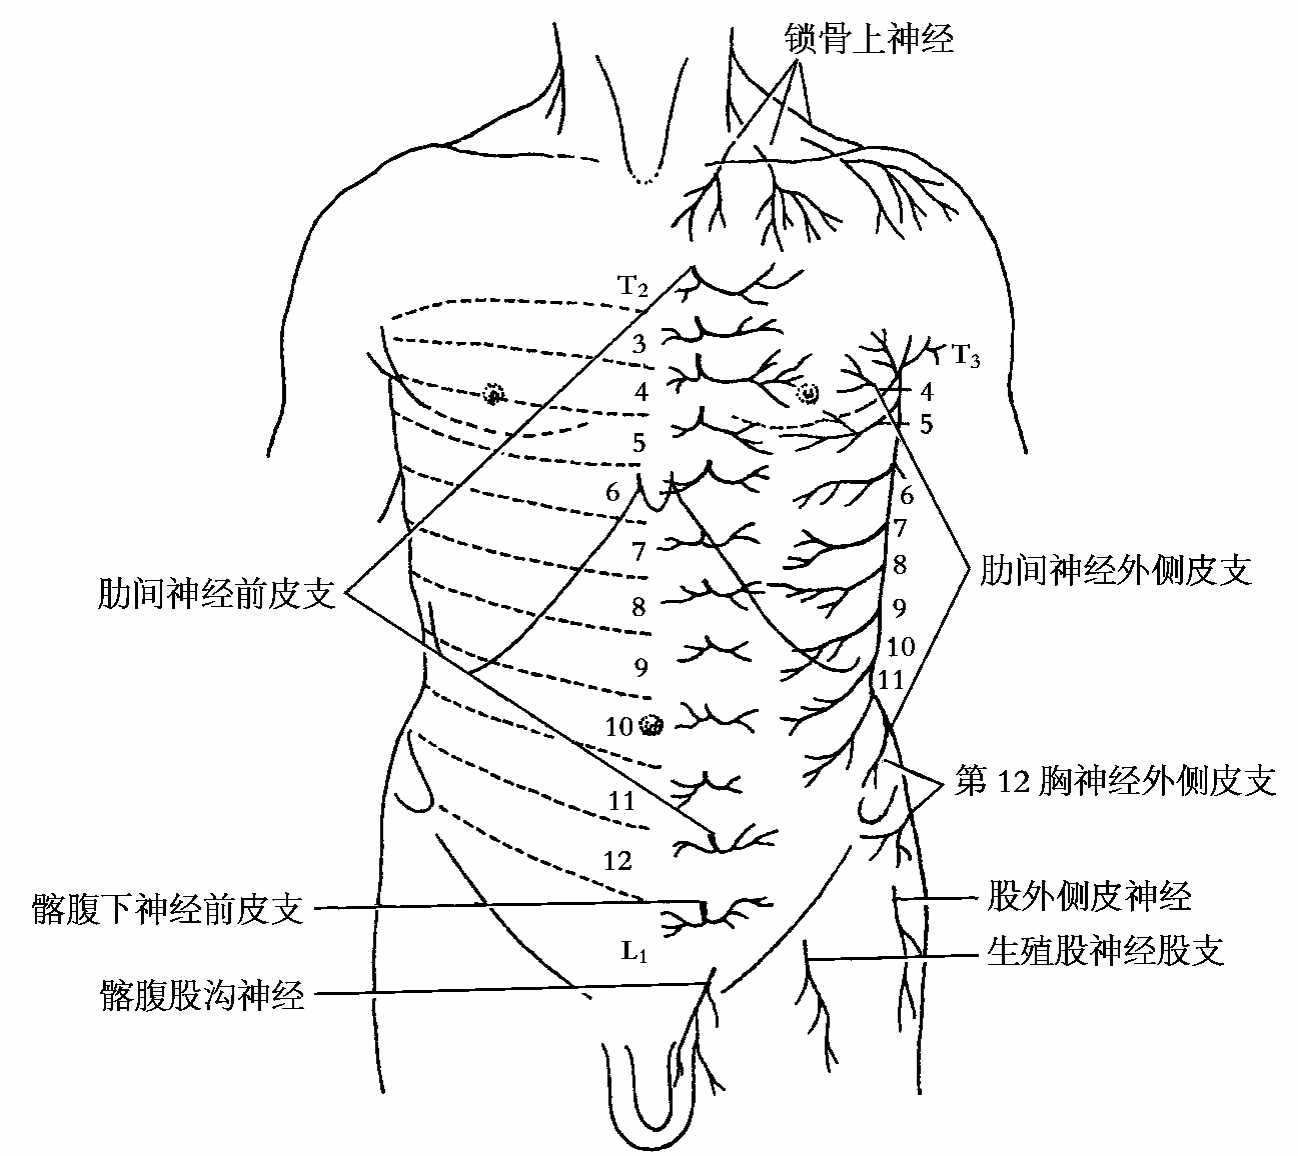 胸椎-运动解剖学-图片